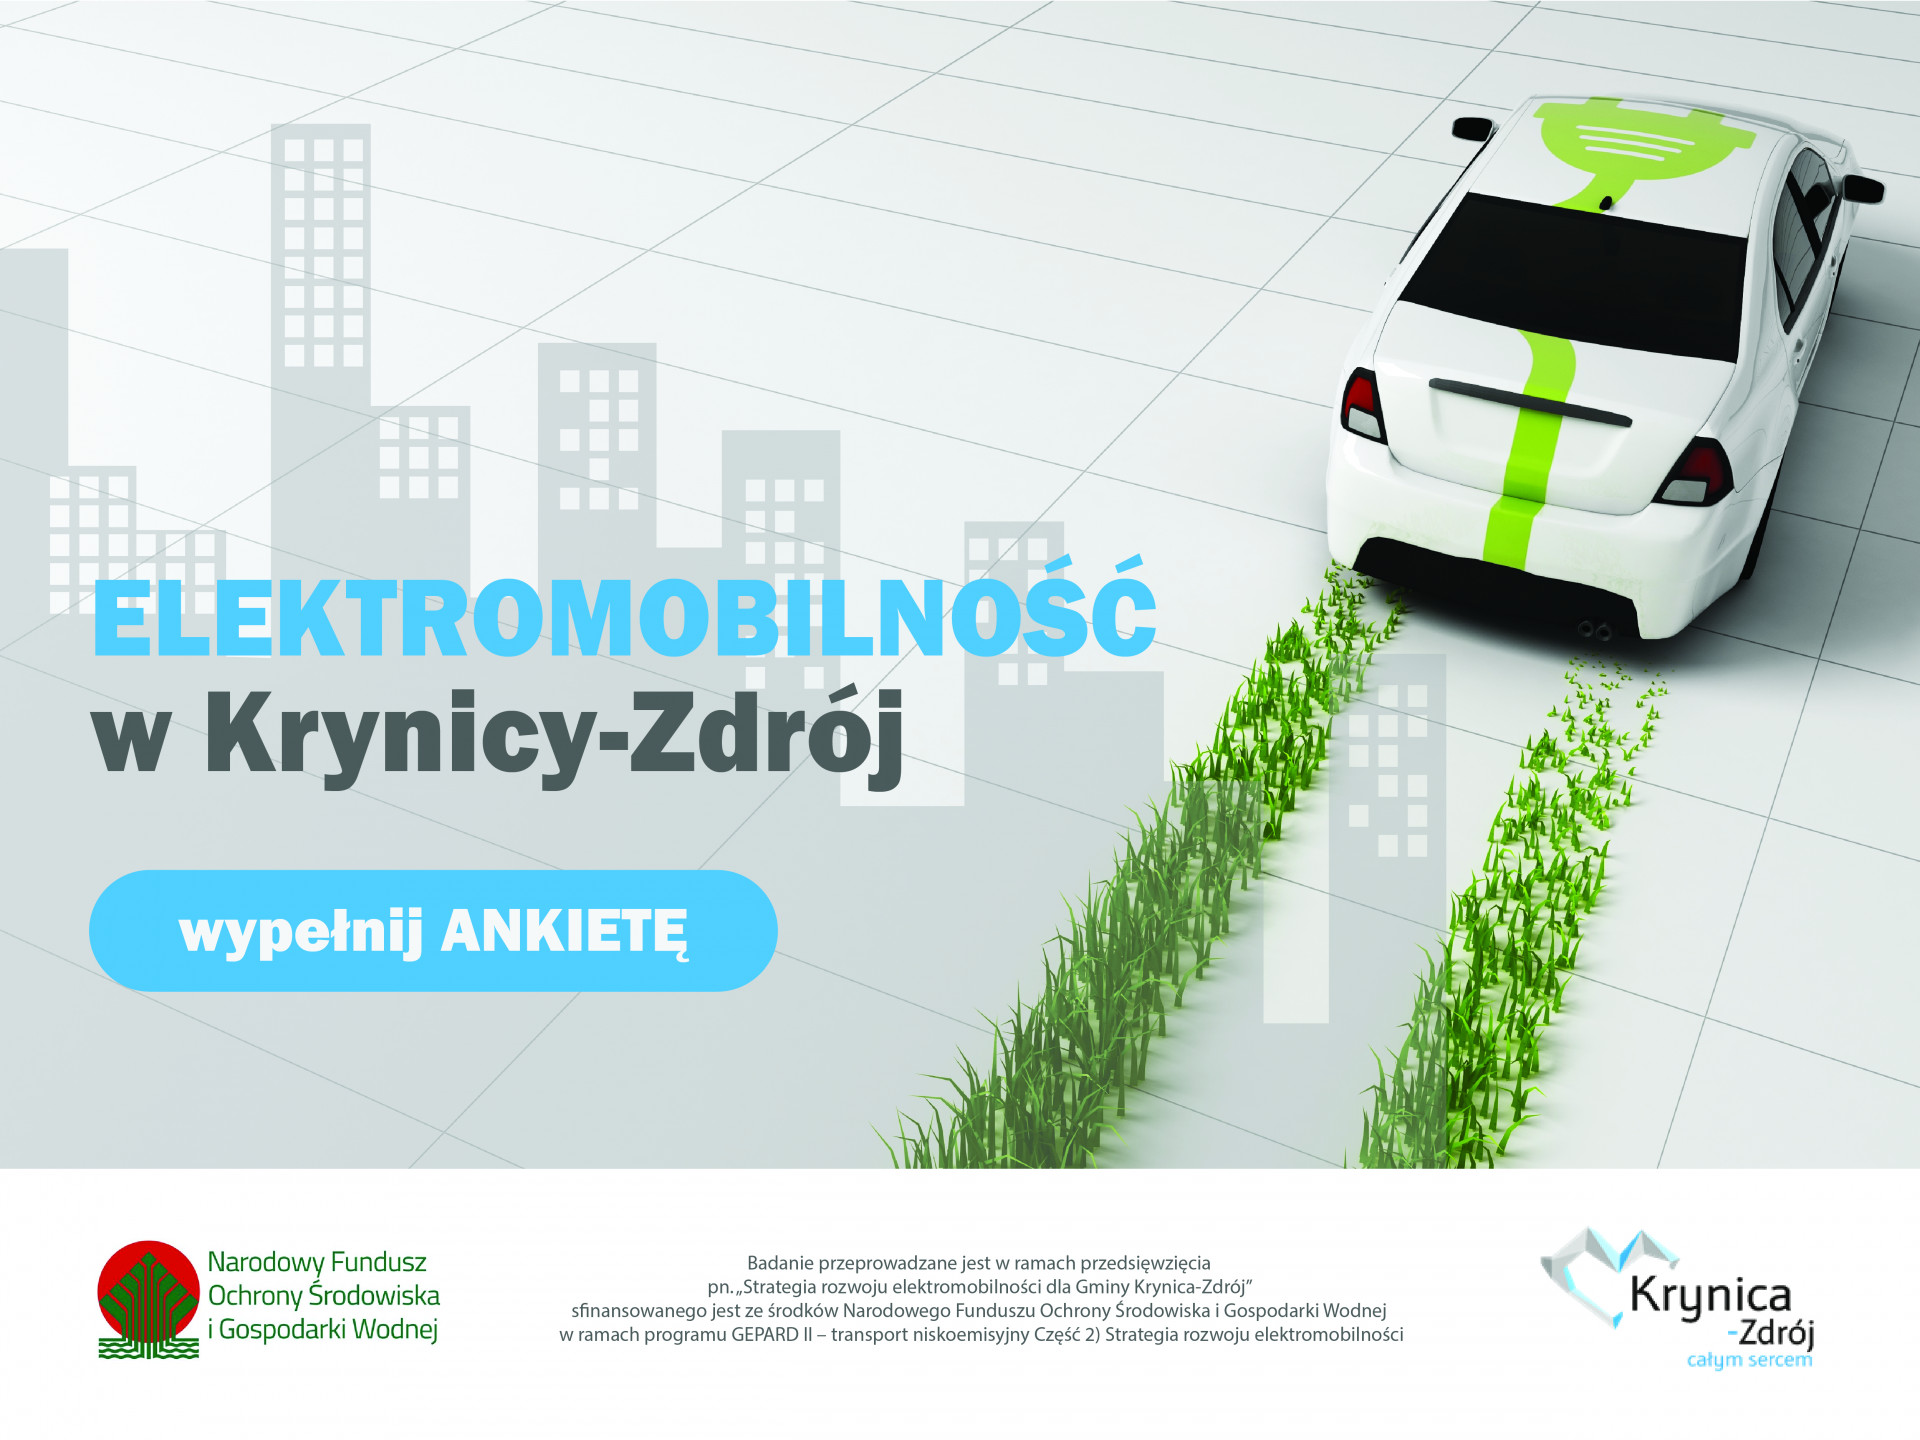 Strategia rozwoju elektromobilności Gminy Krynica-Zdrój - ankieta